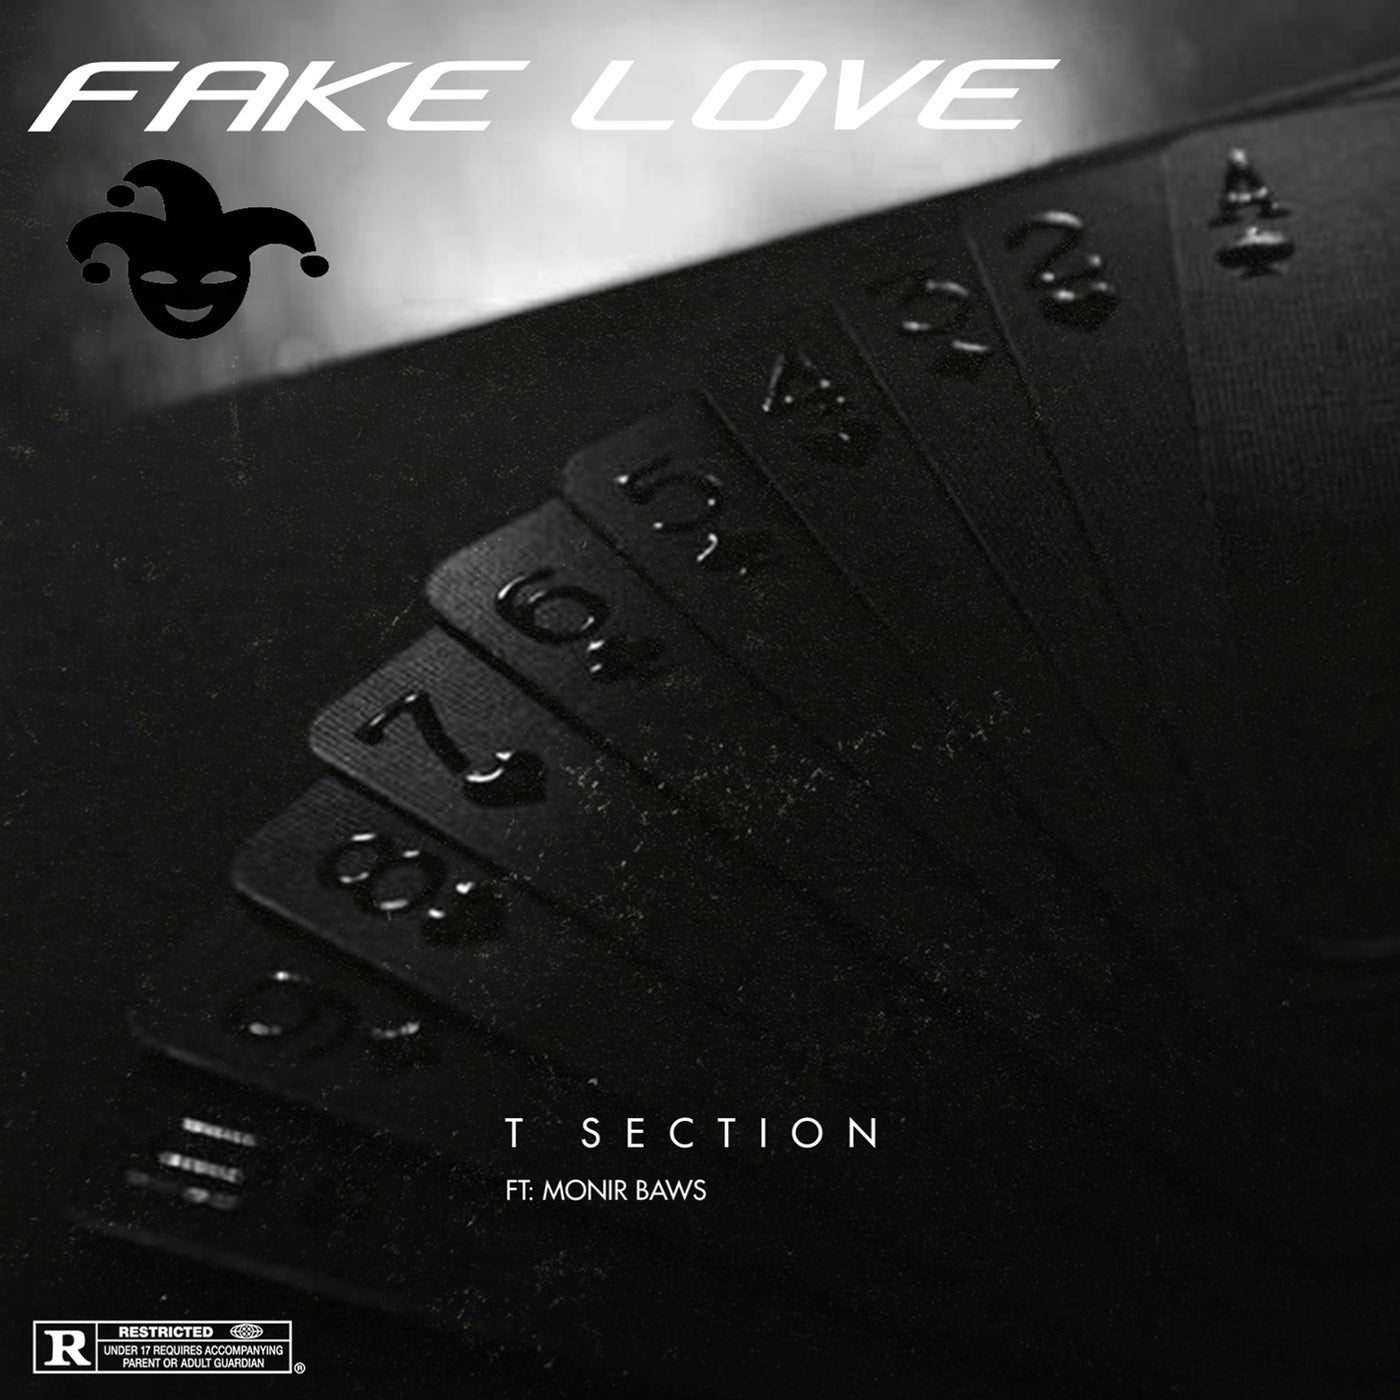 BTS - Fake Love (lyrics) - YouTube